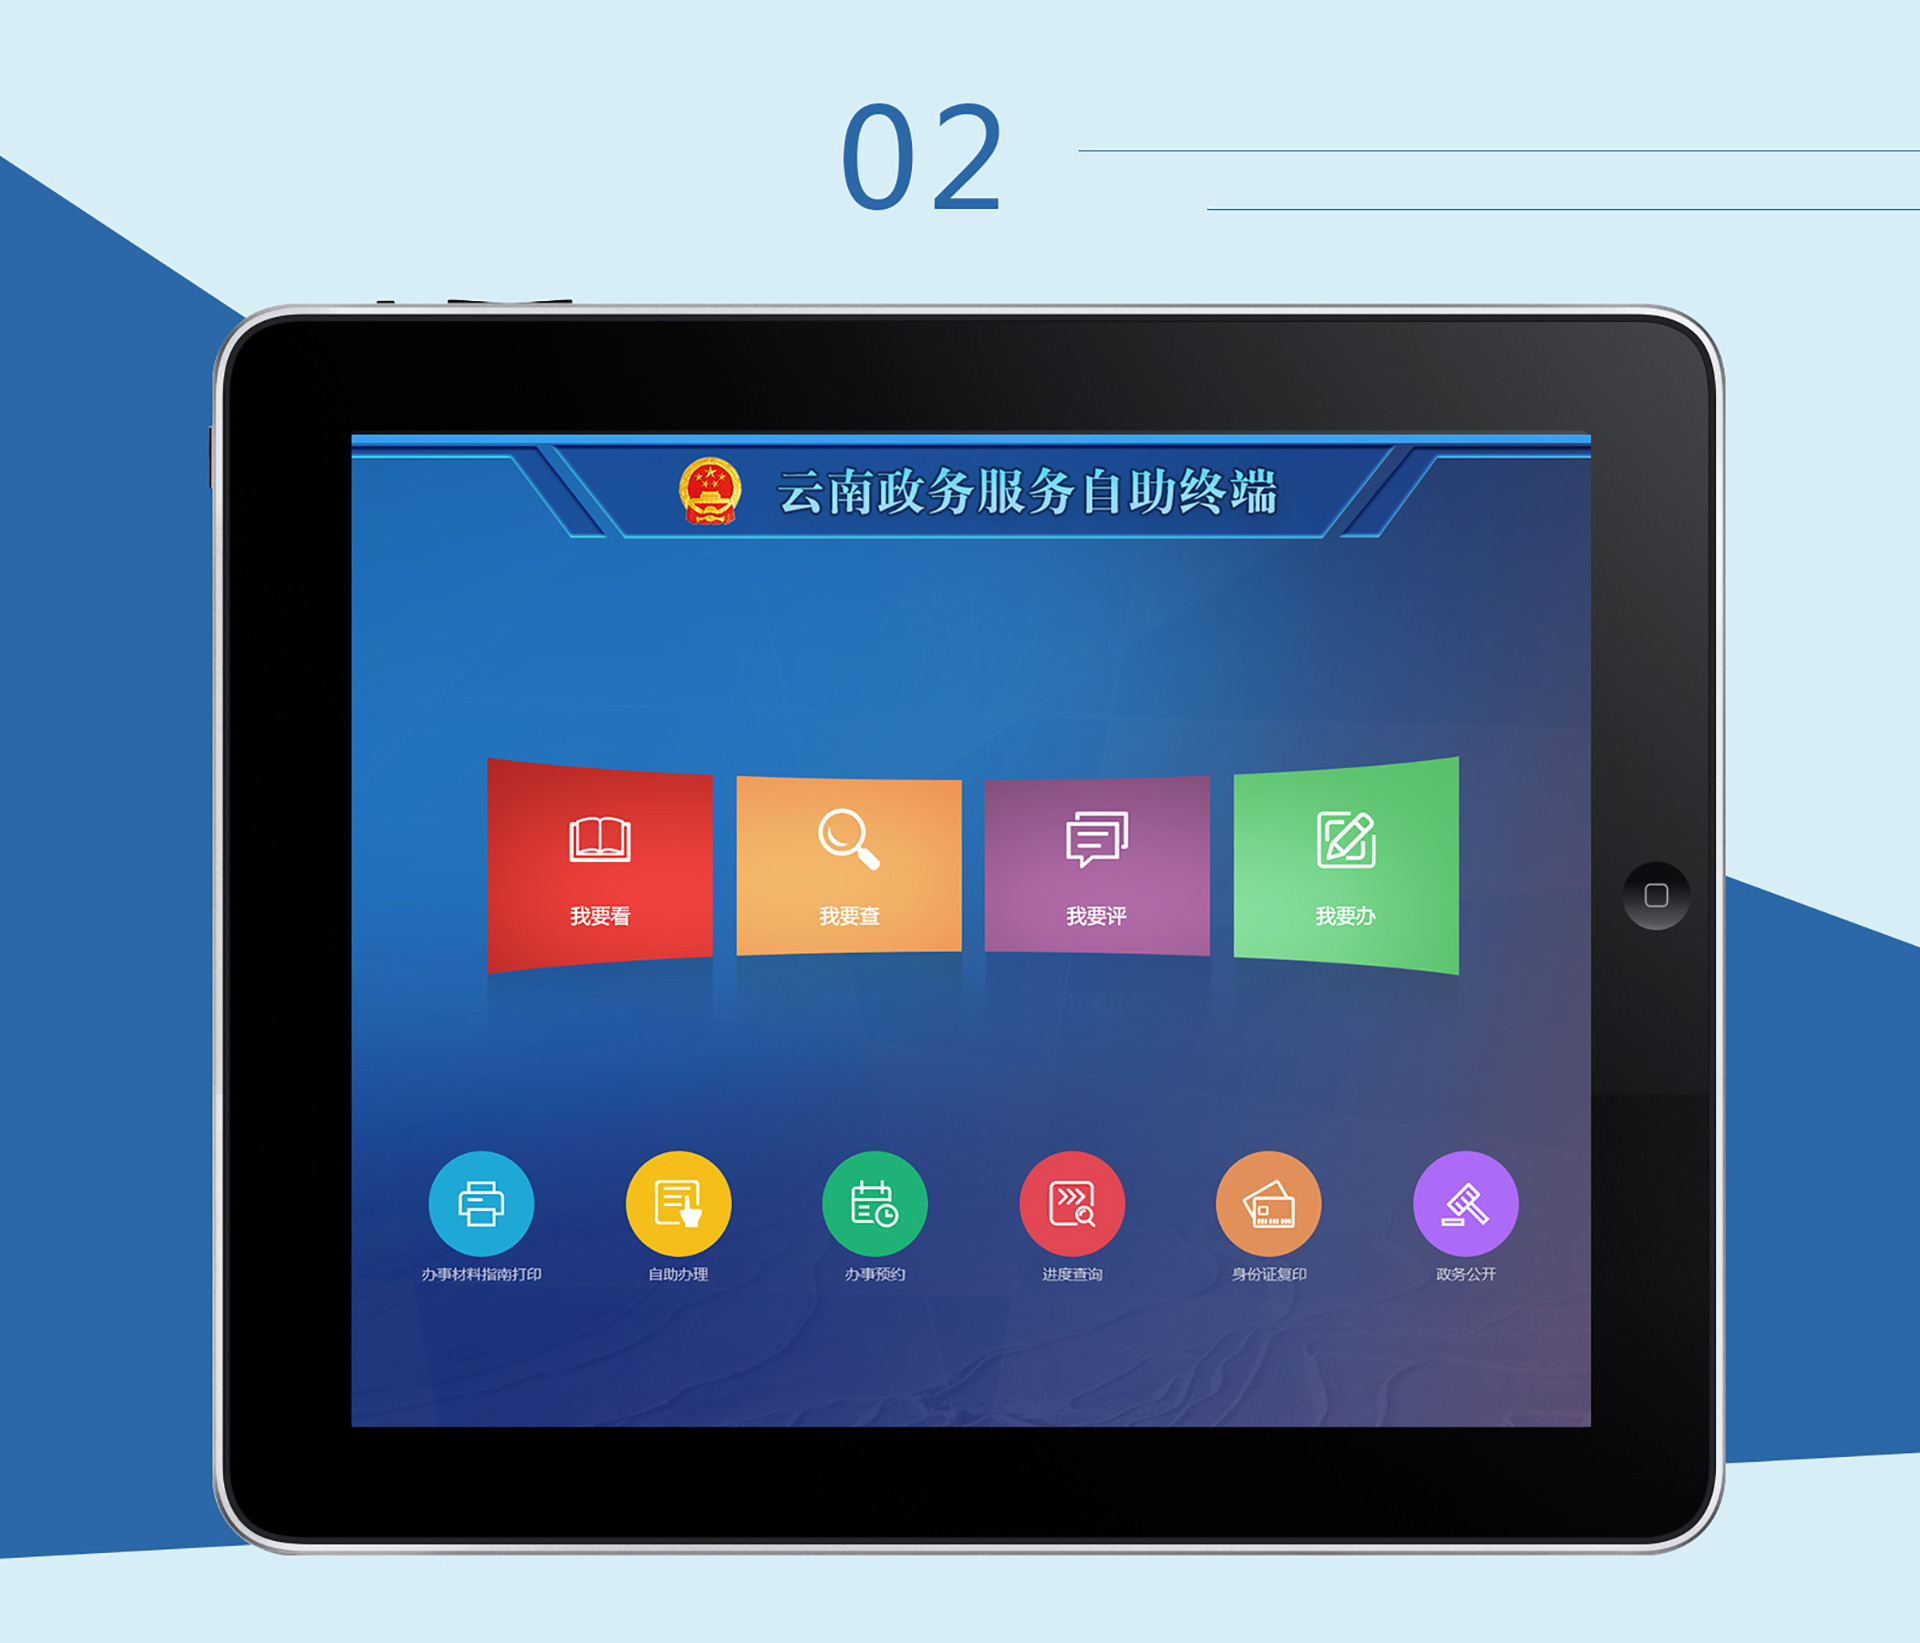 智慧云南政务网设备端UI界面设计